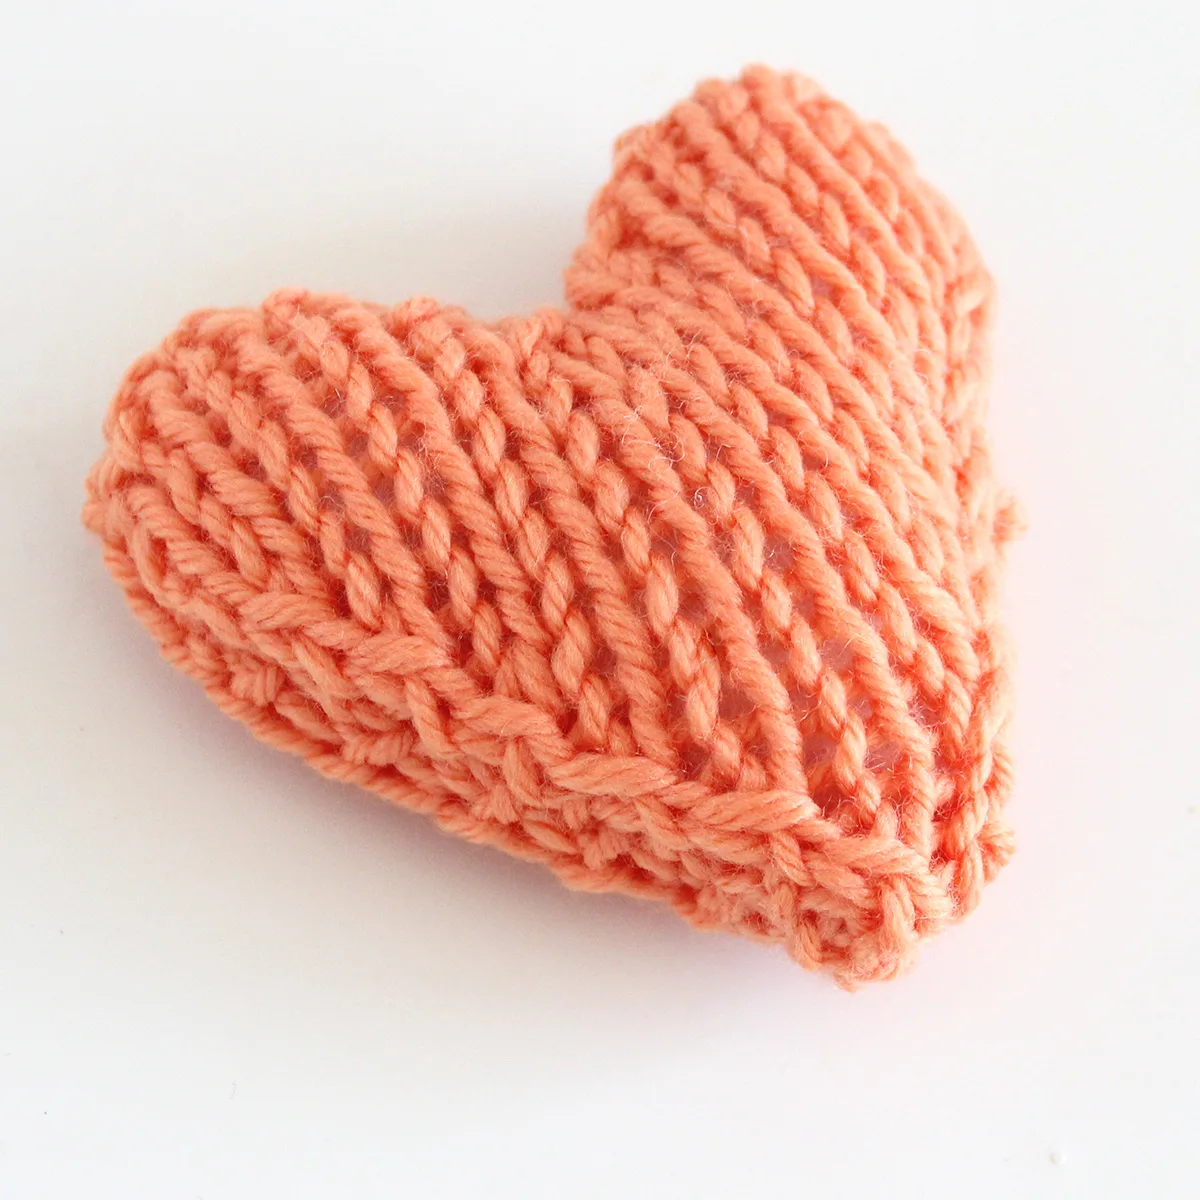 Stuffed heart softie knitted in orange color yarn.